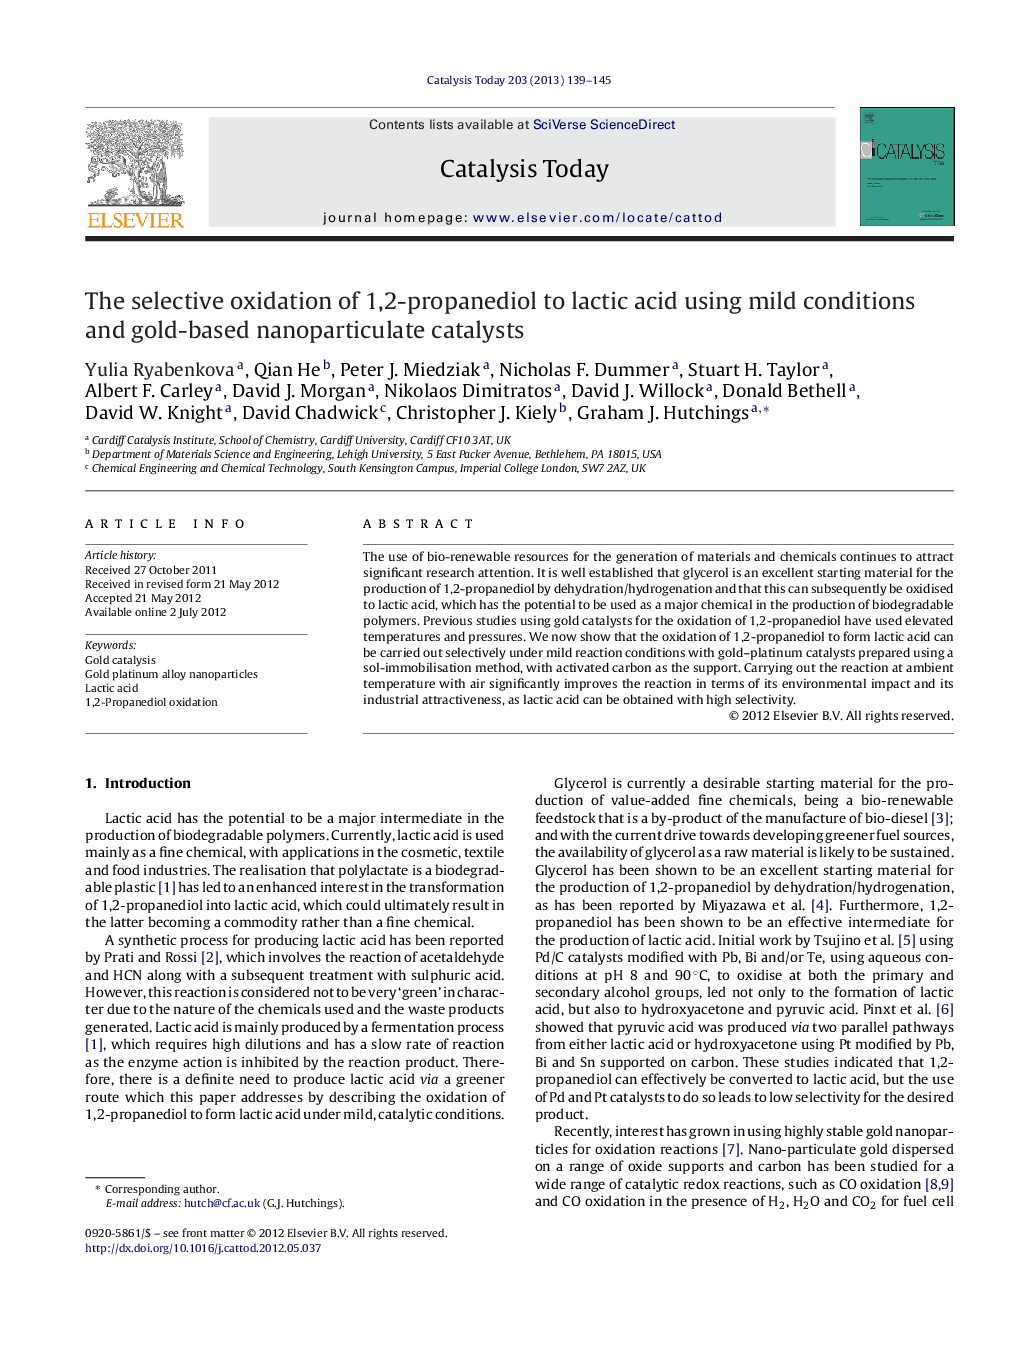 اکسیداسیون انتخابی 1،2-پروپانیدیول به اسید لاکتیک با استفاده از شرایط خفیف و کاتالیزورهای نانوذرات مبتنی بر طلا 